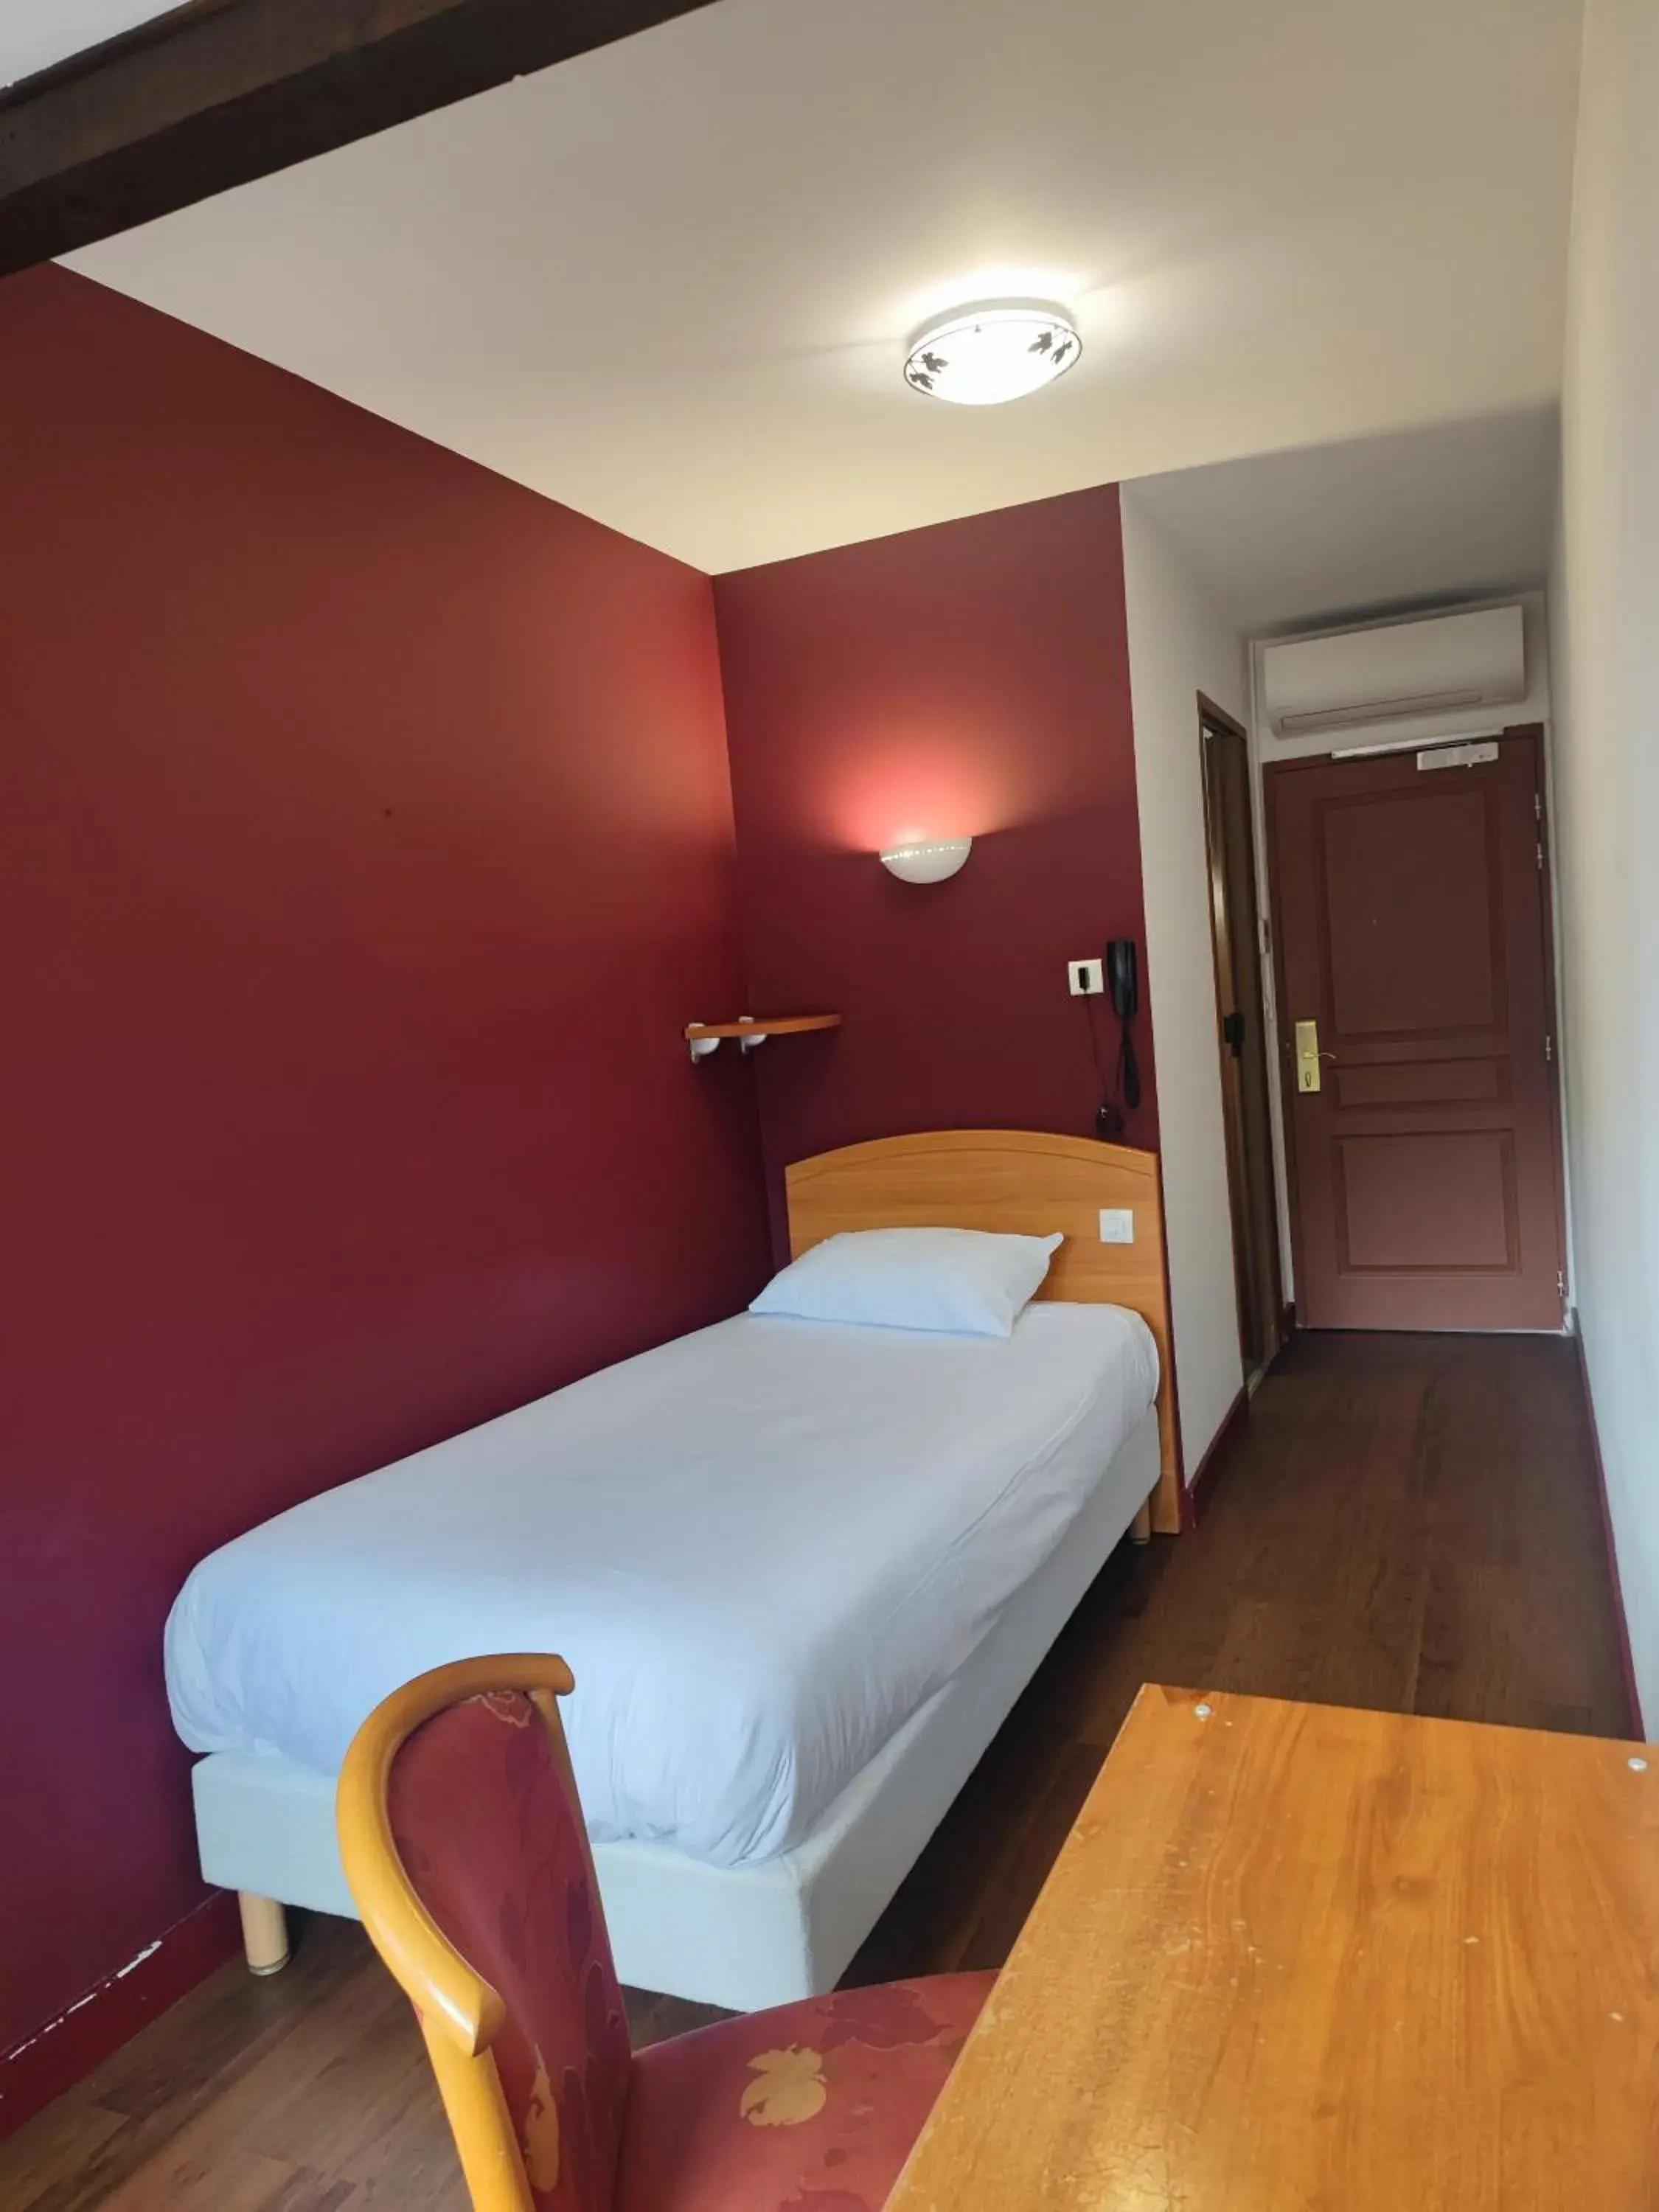 Bed in Hôtel Riquet Resort & Spa